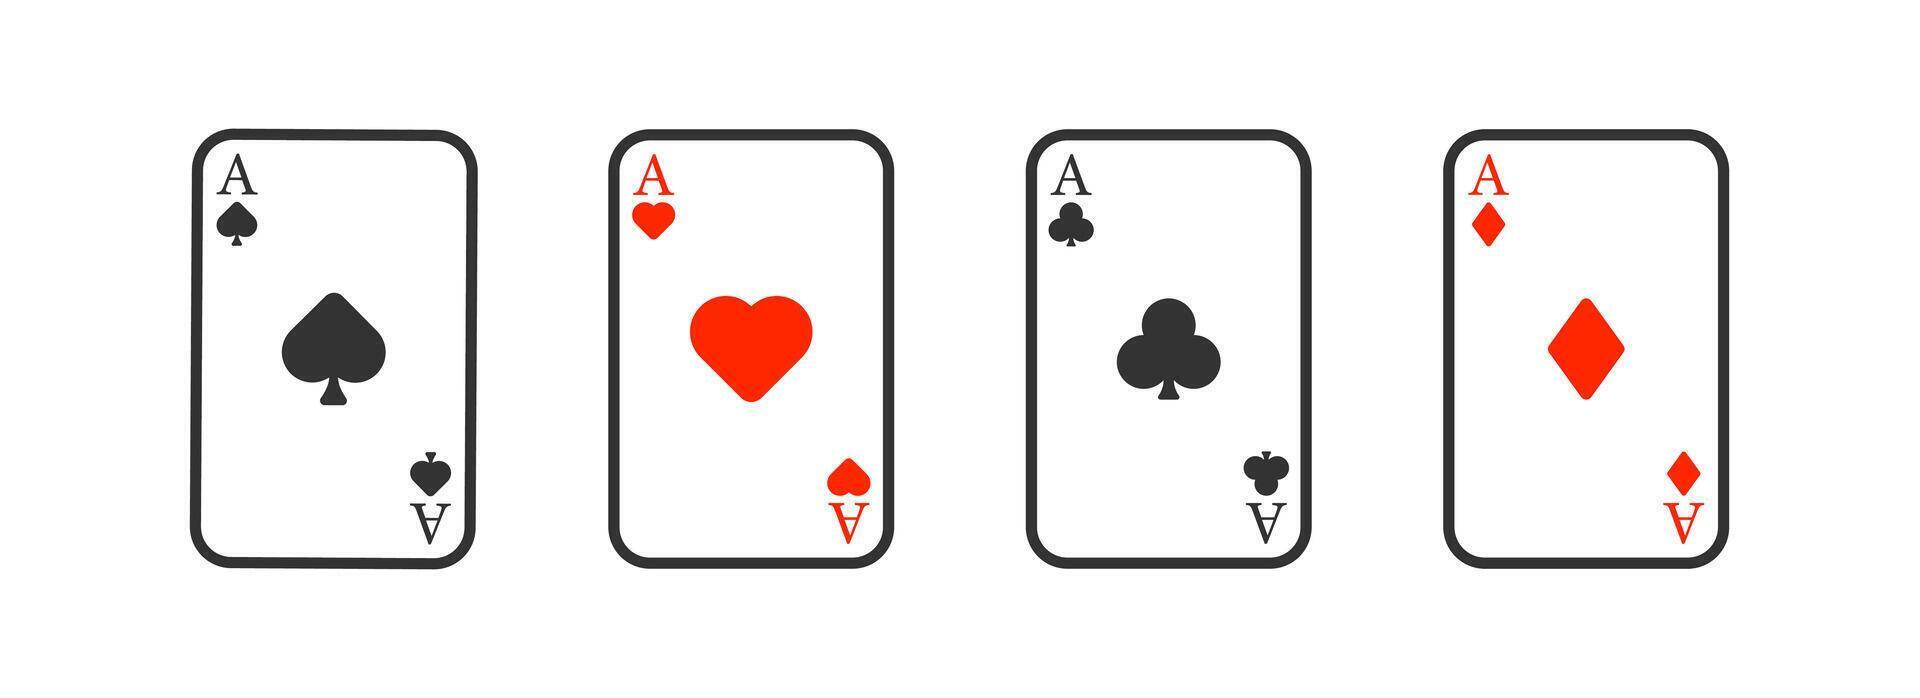 pôquer cartão ícone. cassino cartão jogos símbolo. jogos de azar jogo. vetor placa.